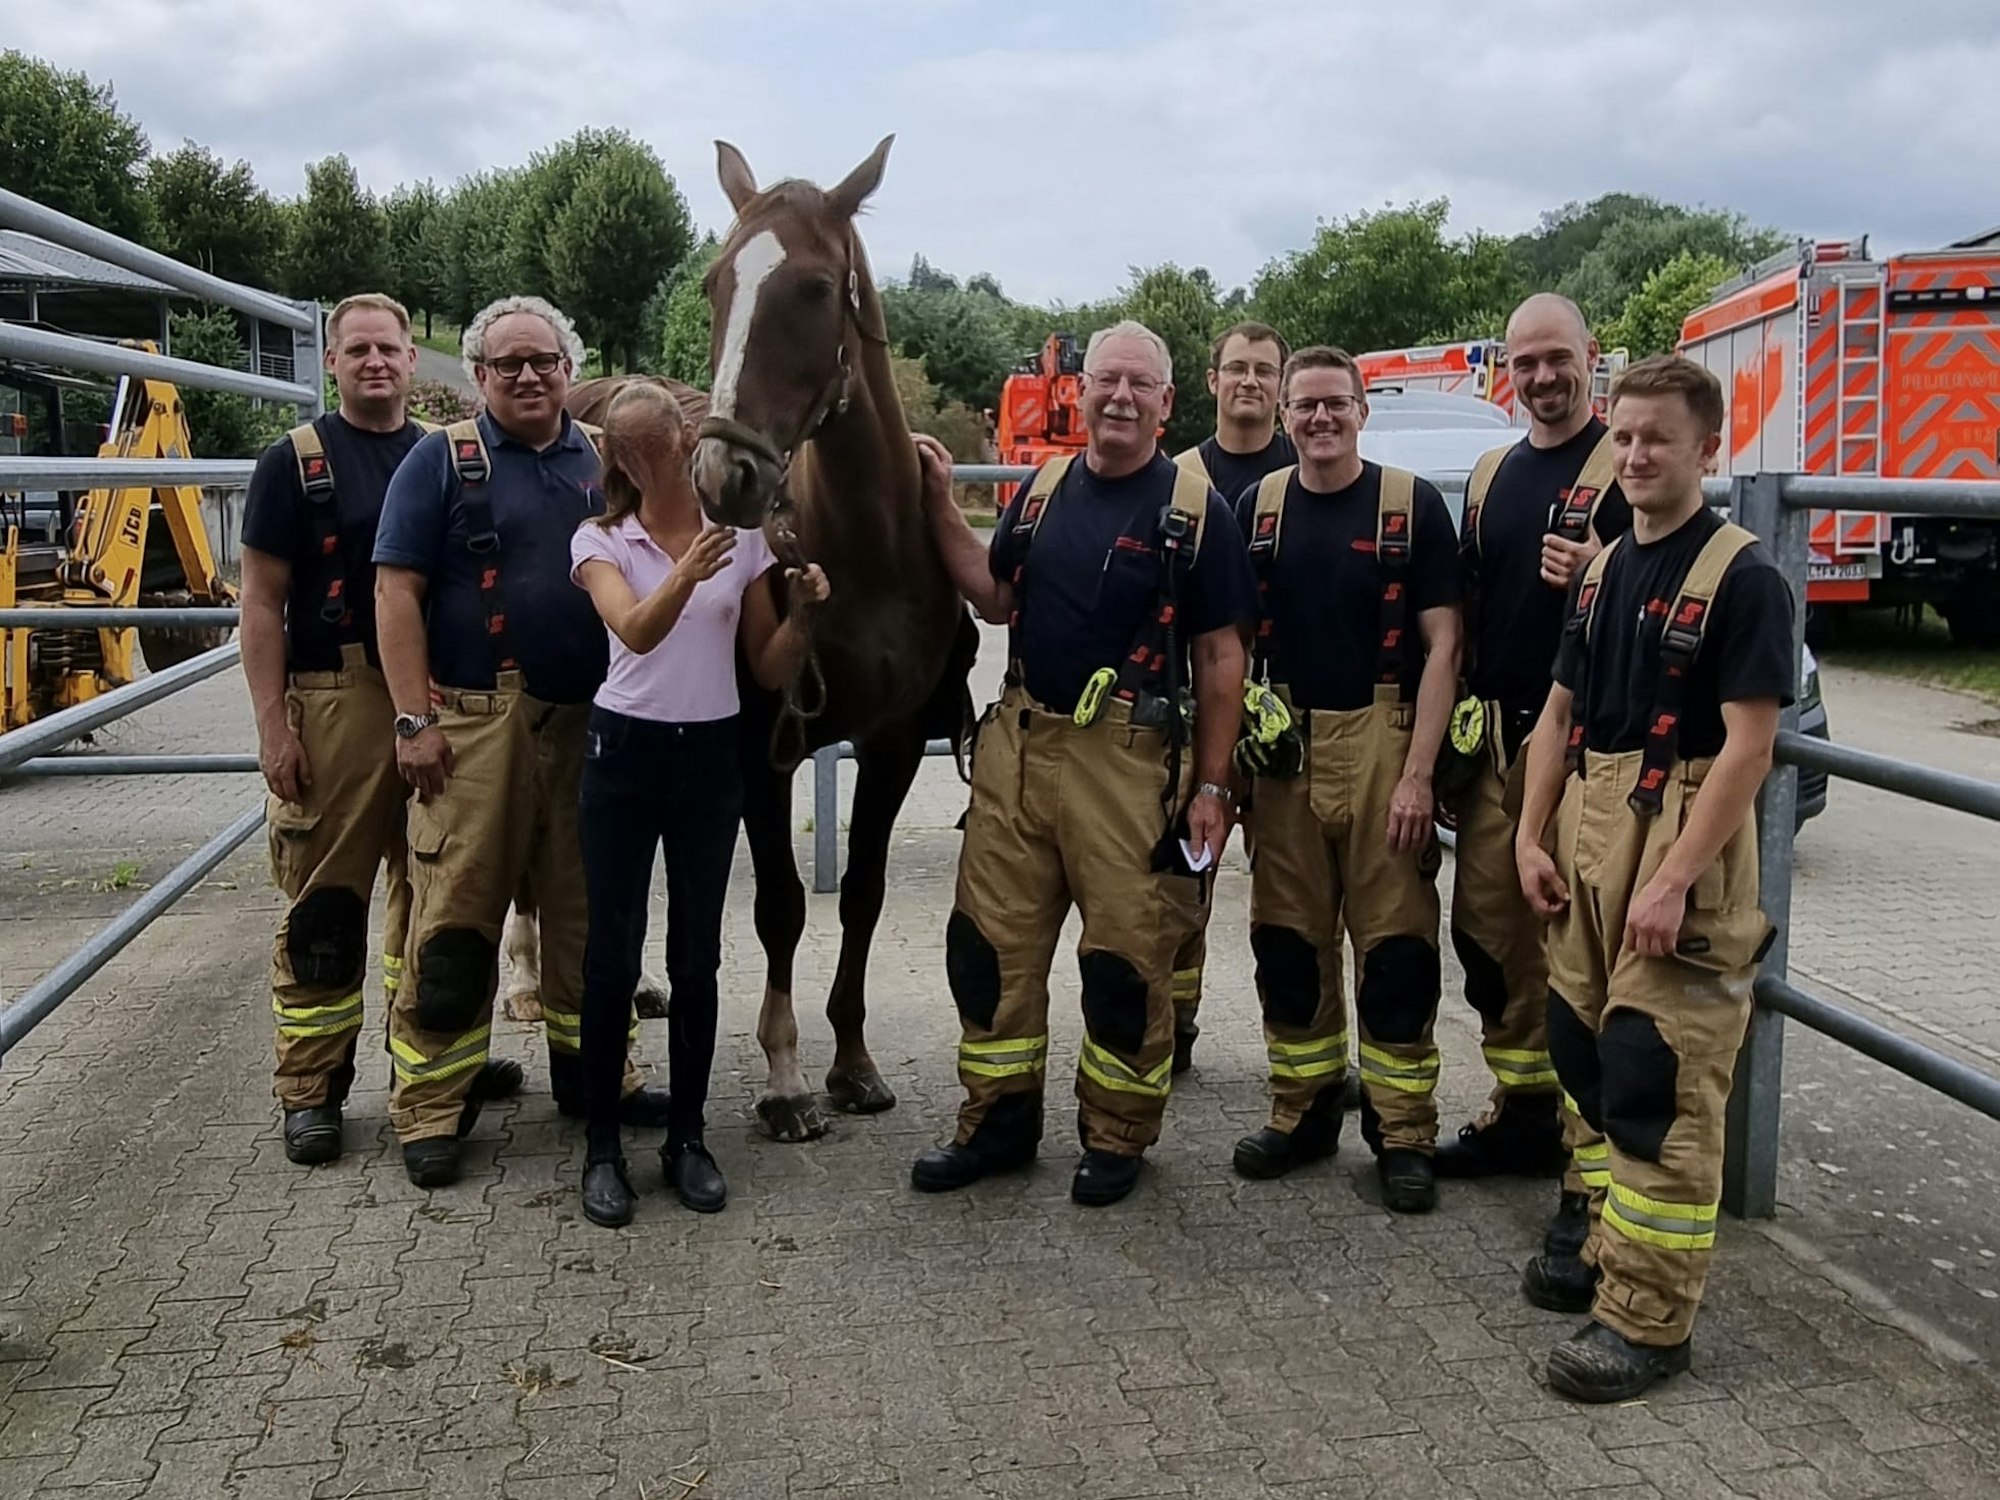 Alles gut gegangen: Die Reiterin, ihr Pferd und die Retter der Feuerwehr Bergisch Gladbach nach dem Unfall.